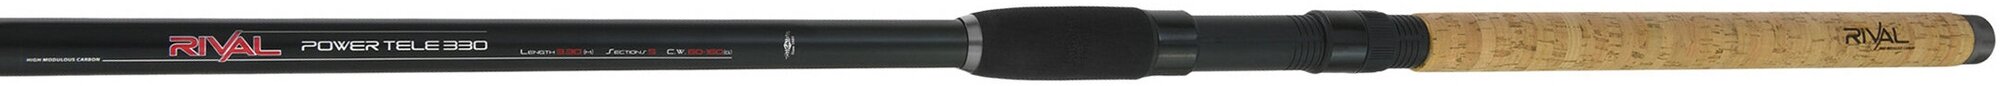 Удилище телескопическое с кольцами Mikado RIVAL POWER TELE 330 (тест 60-160 г) WAA818-330